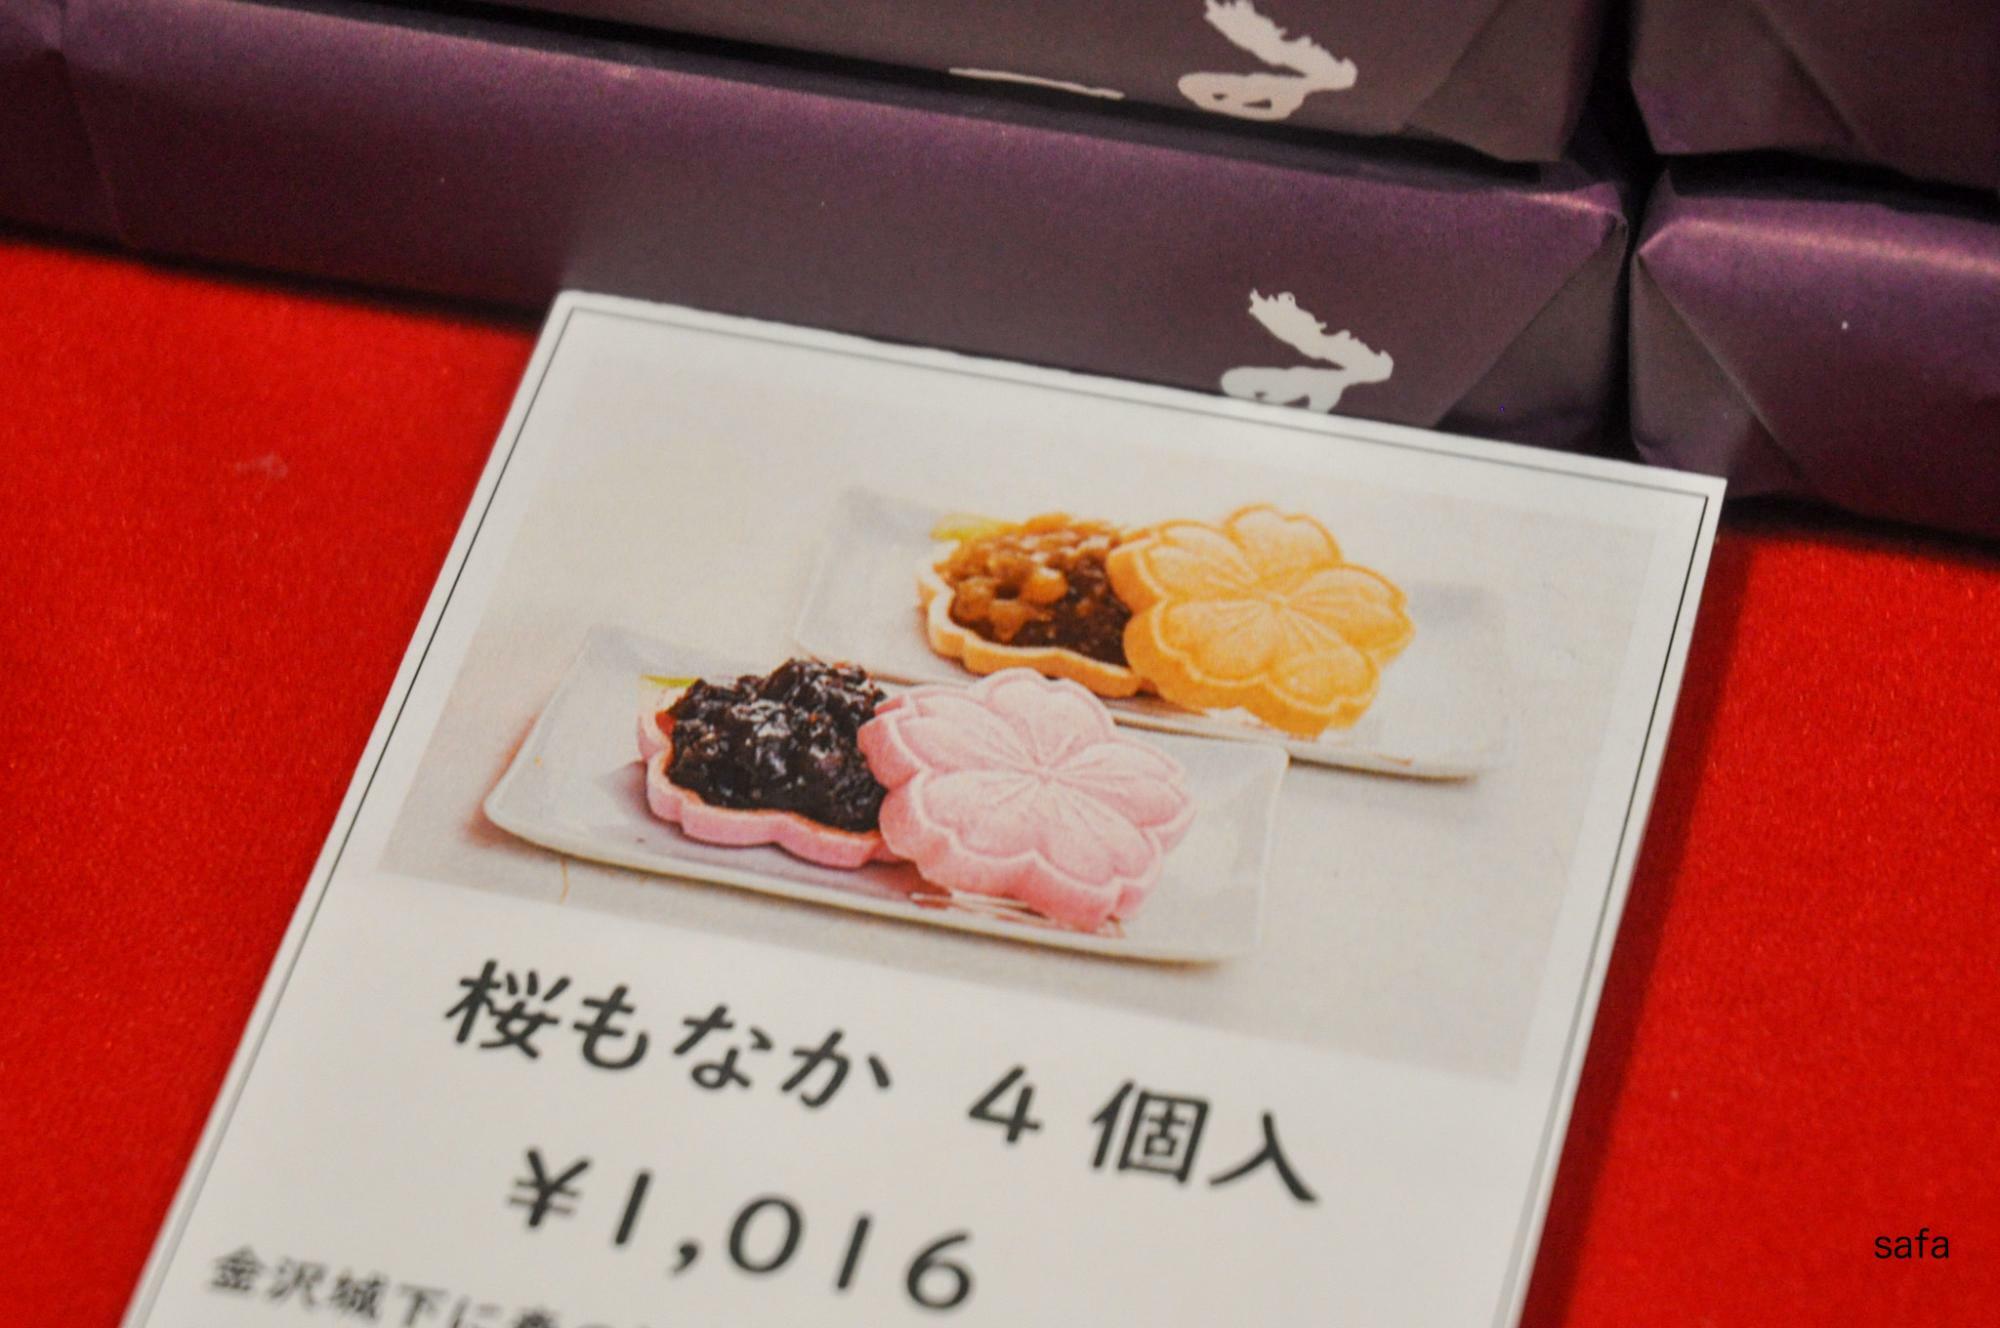 加賀藩御用菓子司 森八は1625年創業の老舗。ヨモギの餡は金沢ならでは。